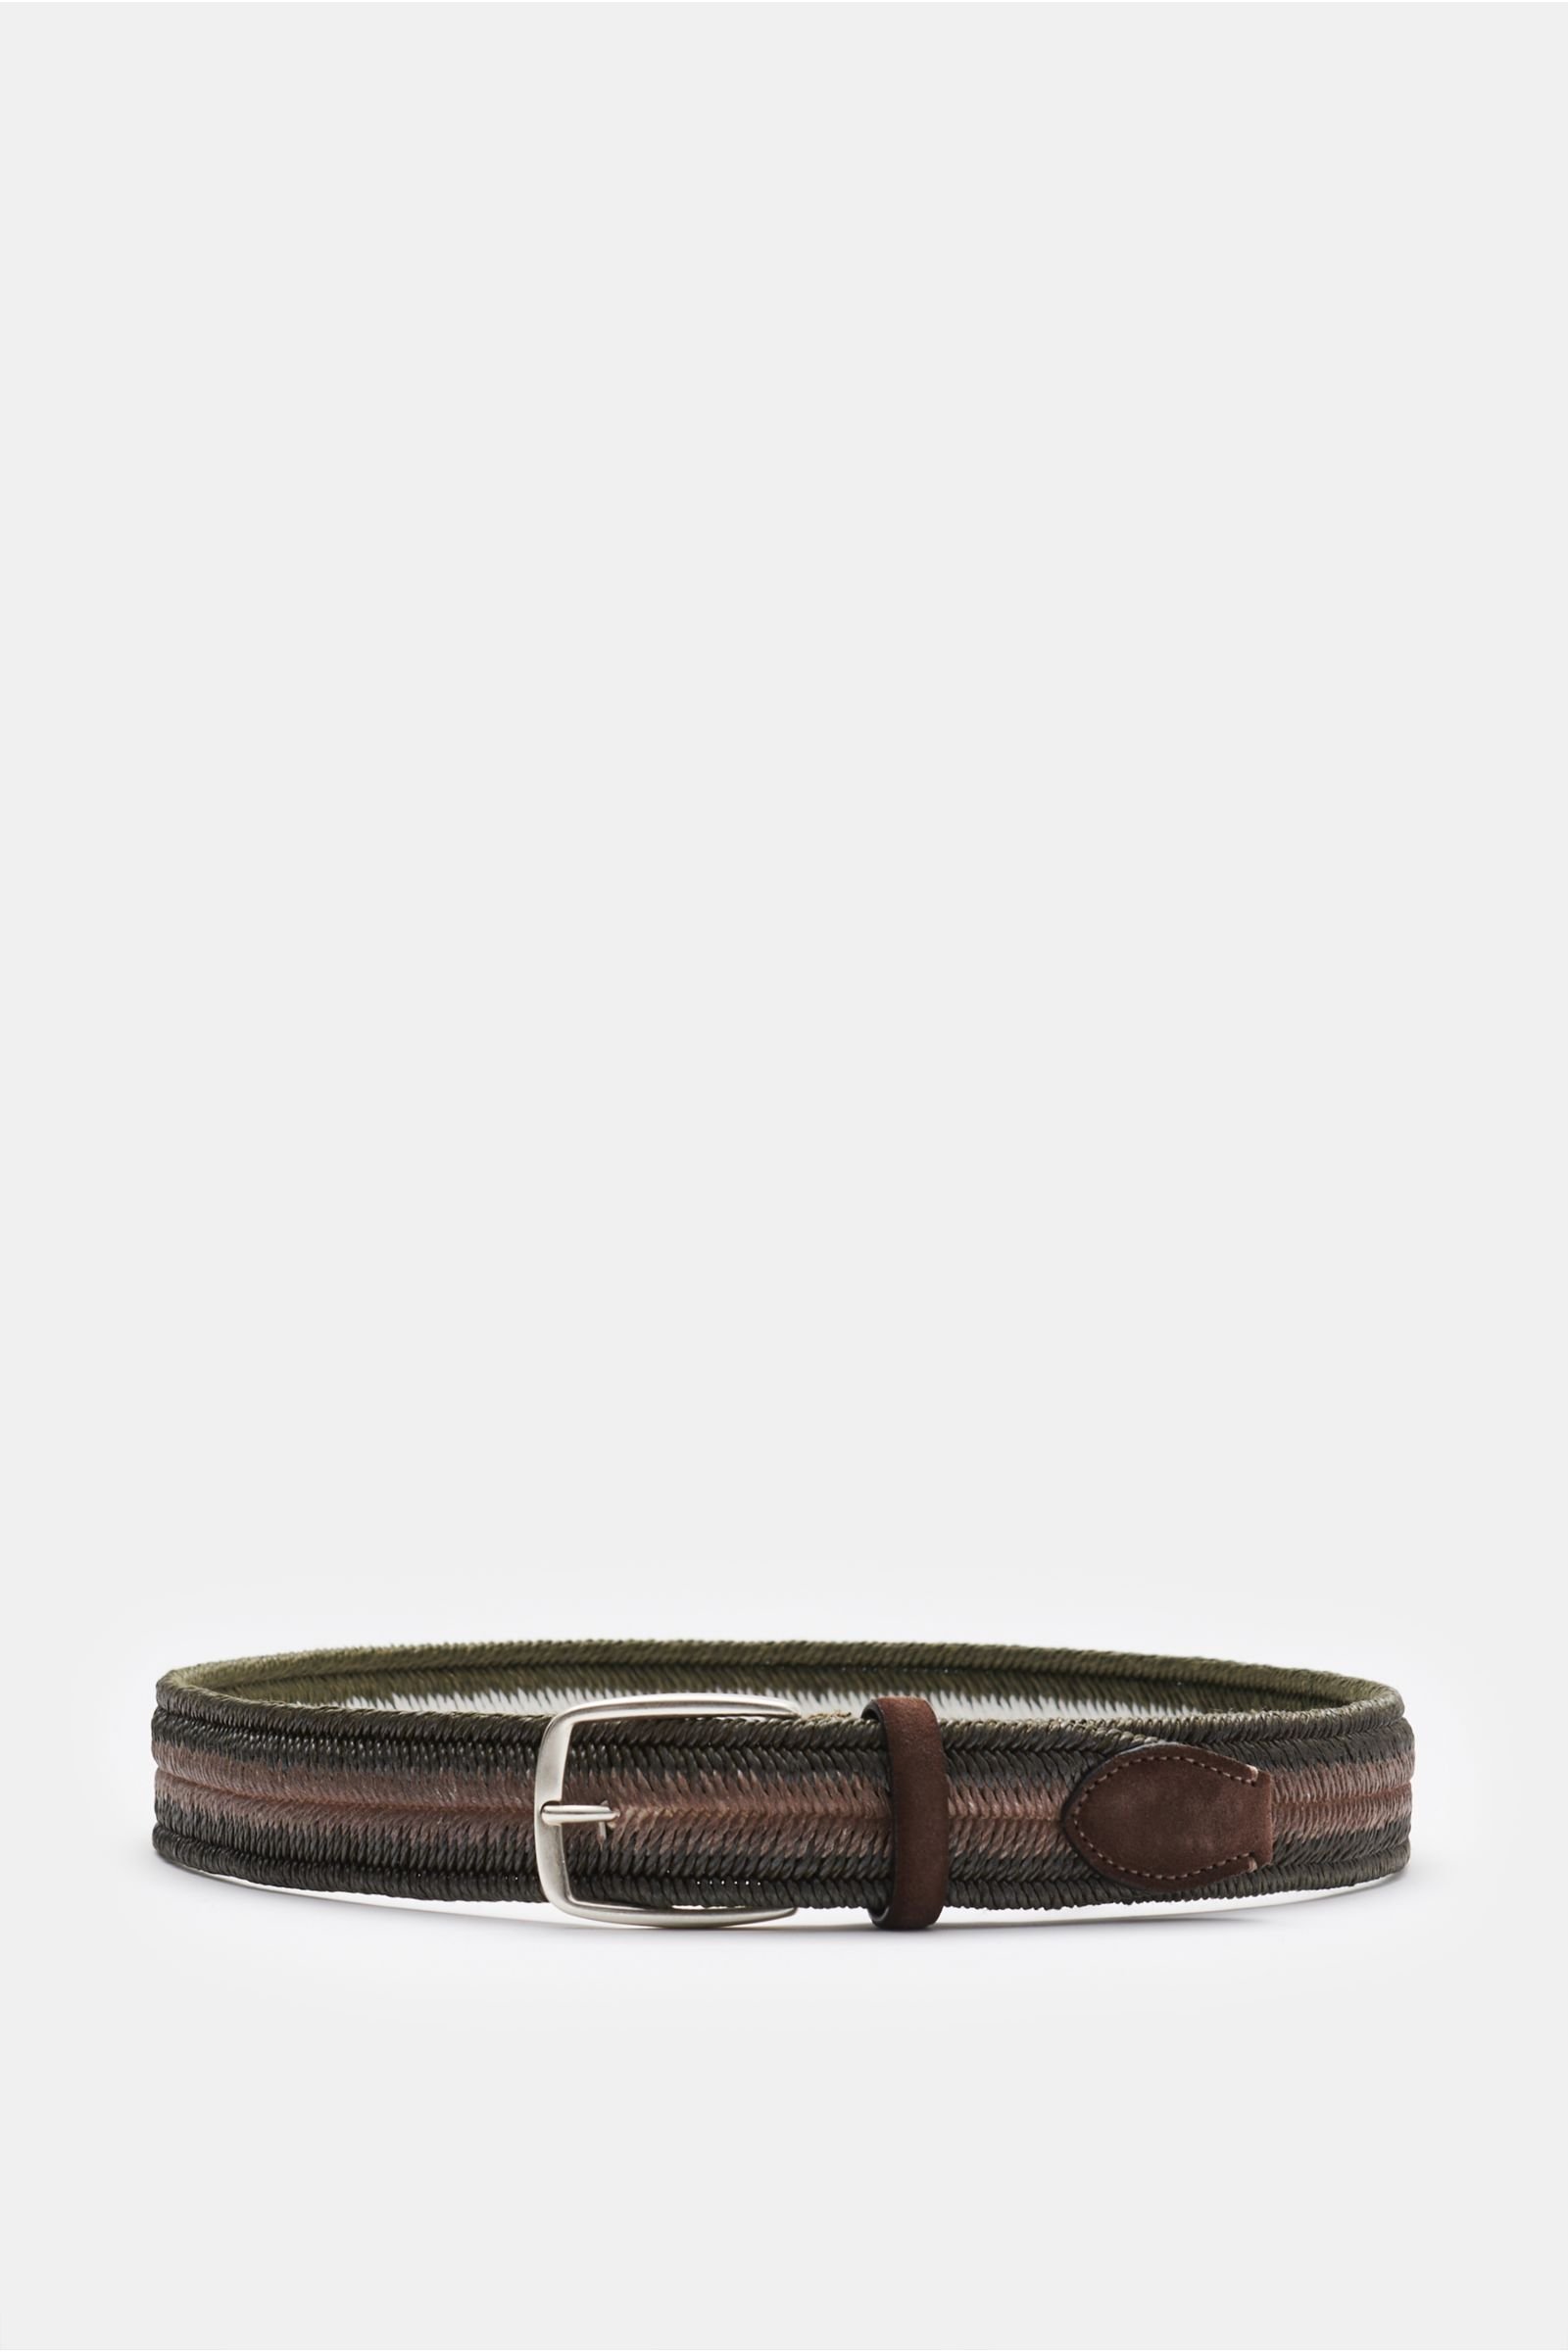 Plaited belt dark olive/brown 